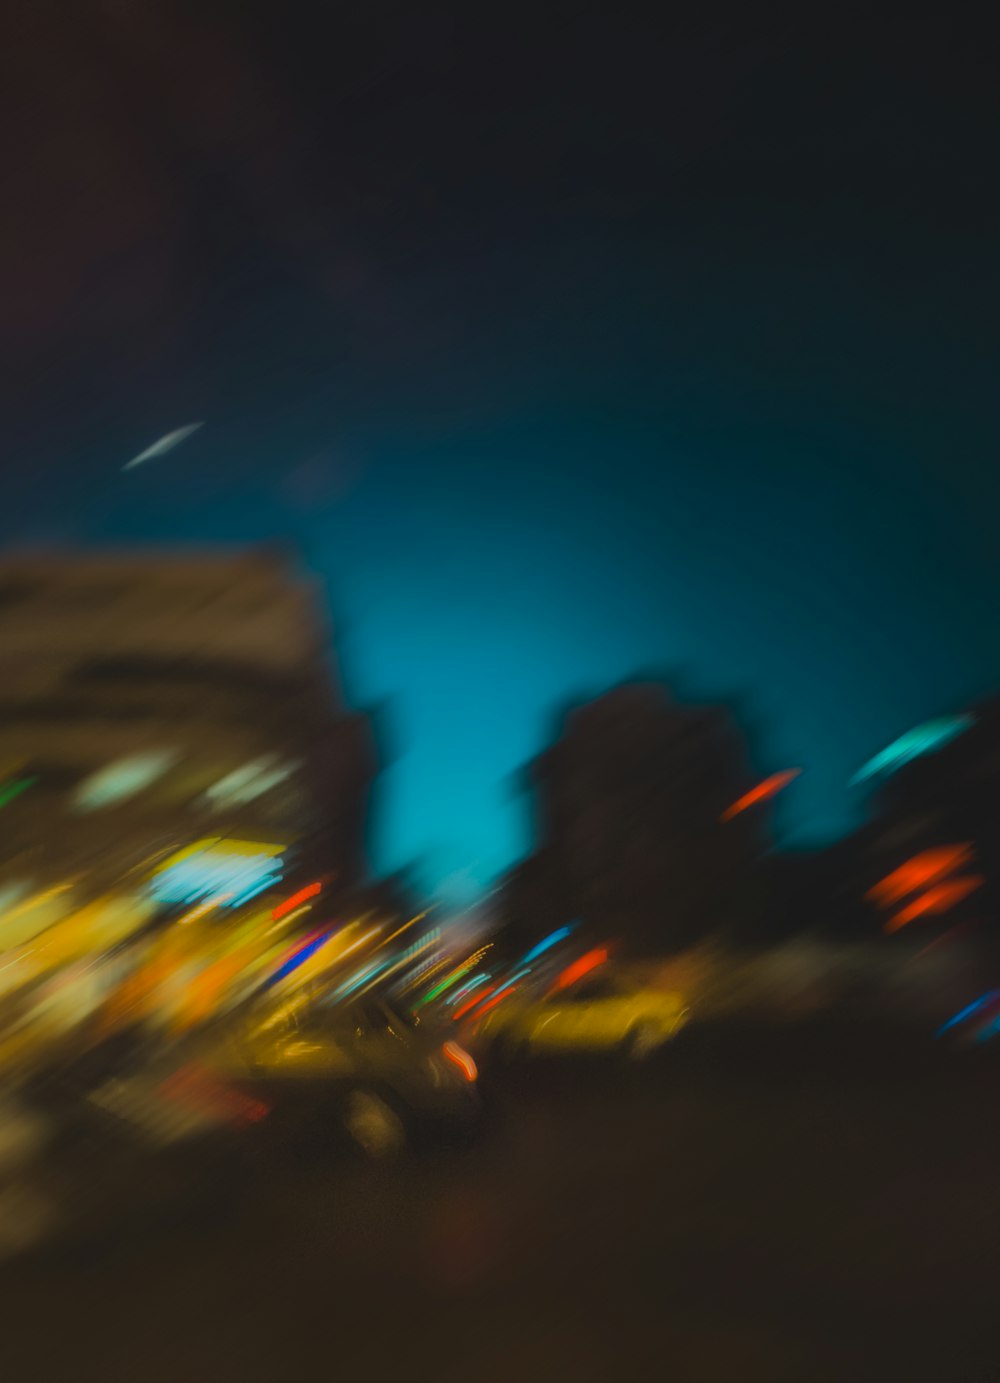 Bạn đang tìm kiếm một bức ảnh đêm phố với hiệu ứng mờ nghệ thuật để làm hình nền cho chiếc smartphone của mình? Đến với chúng tôi và khám phá những bức ảnh đêm với phông nghệ thuật cực kỳ độc đáo và tuyệt đẹp chụp bằng iPhone.